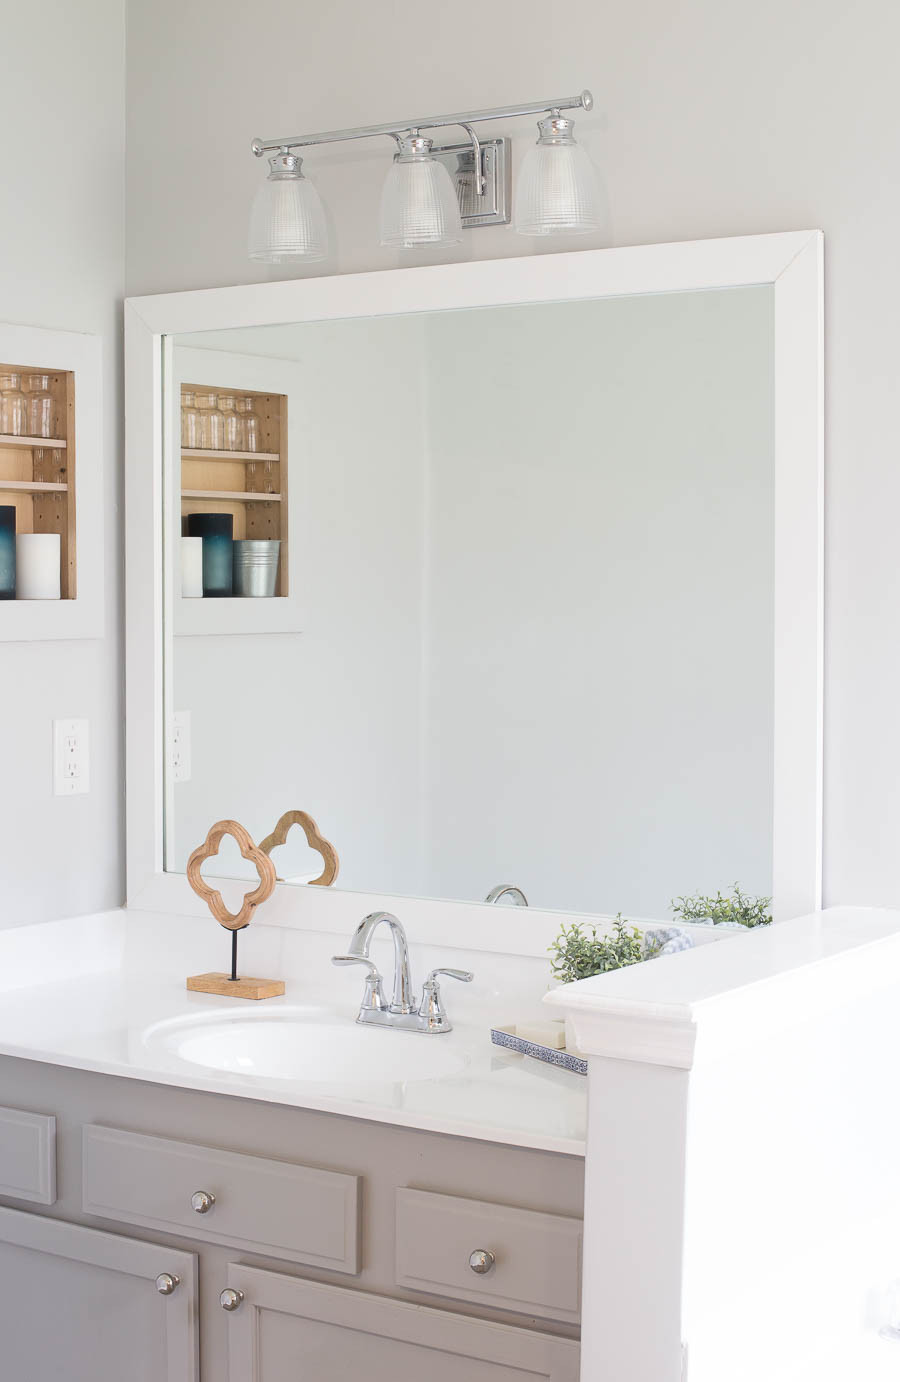 Bathroom Vanity Mirror Ideas
 How to Frame a Bathroom Mirror Easy DIY project